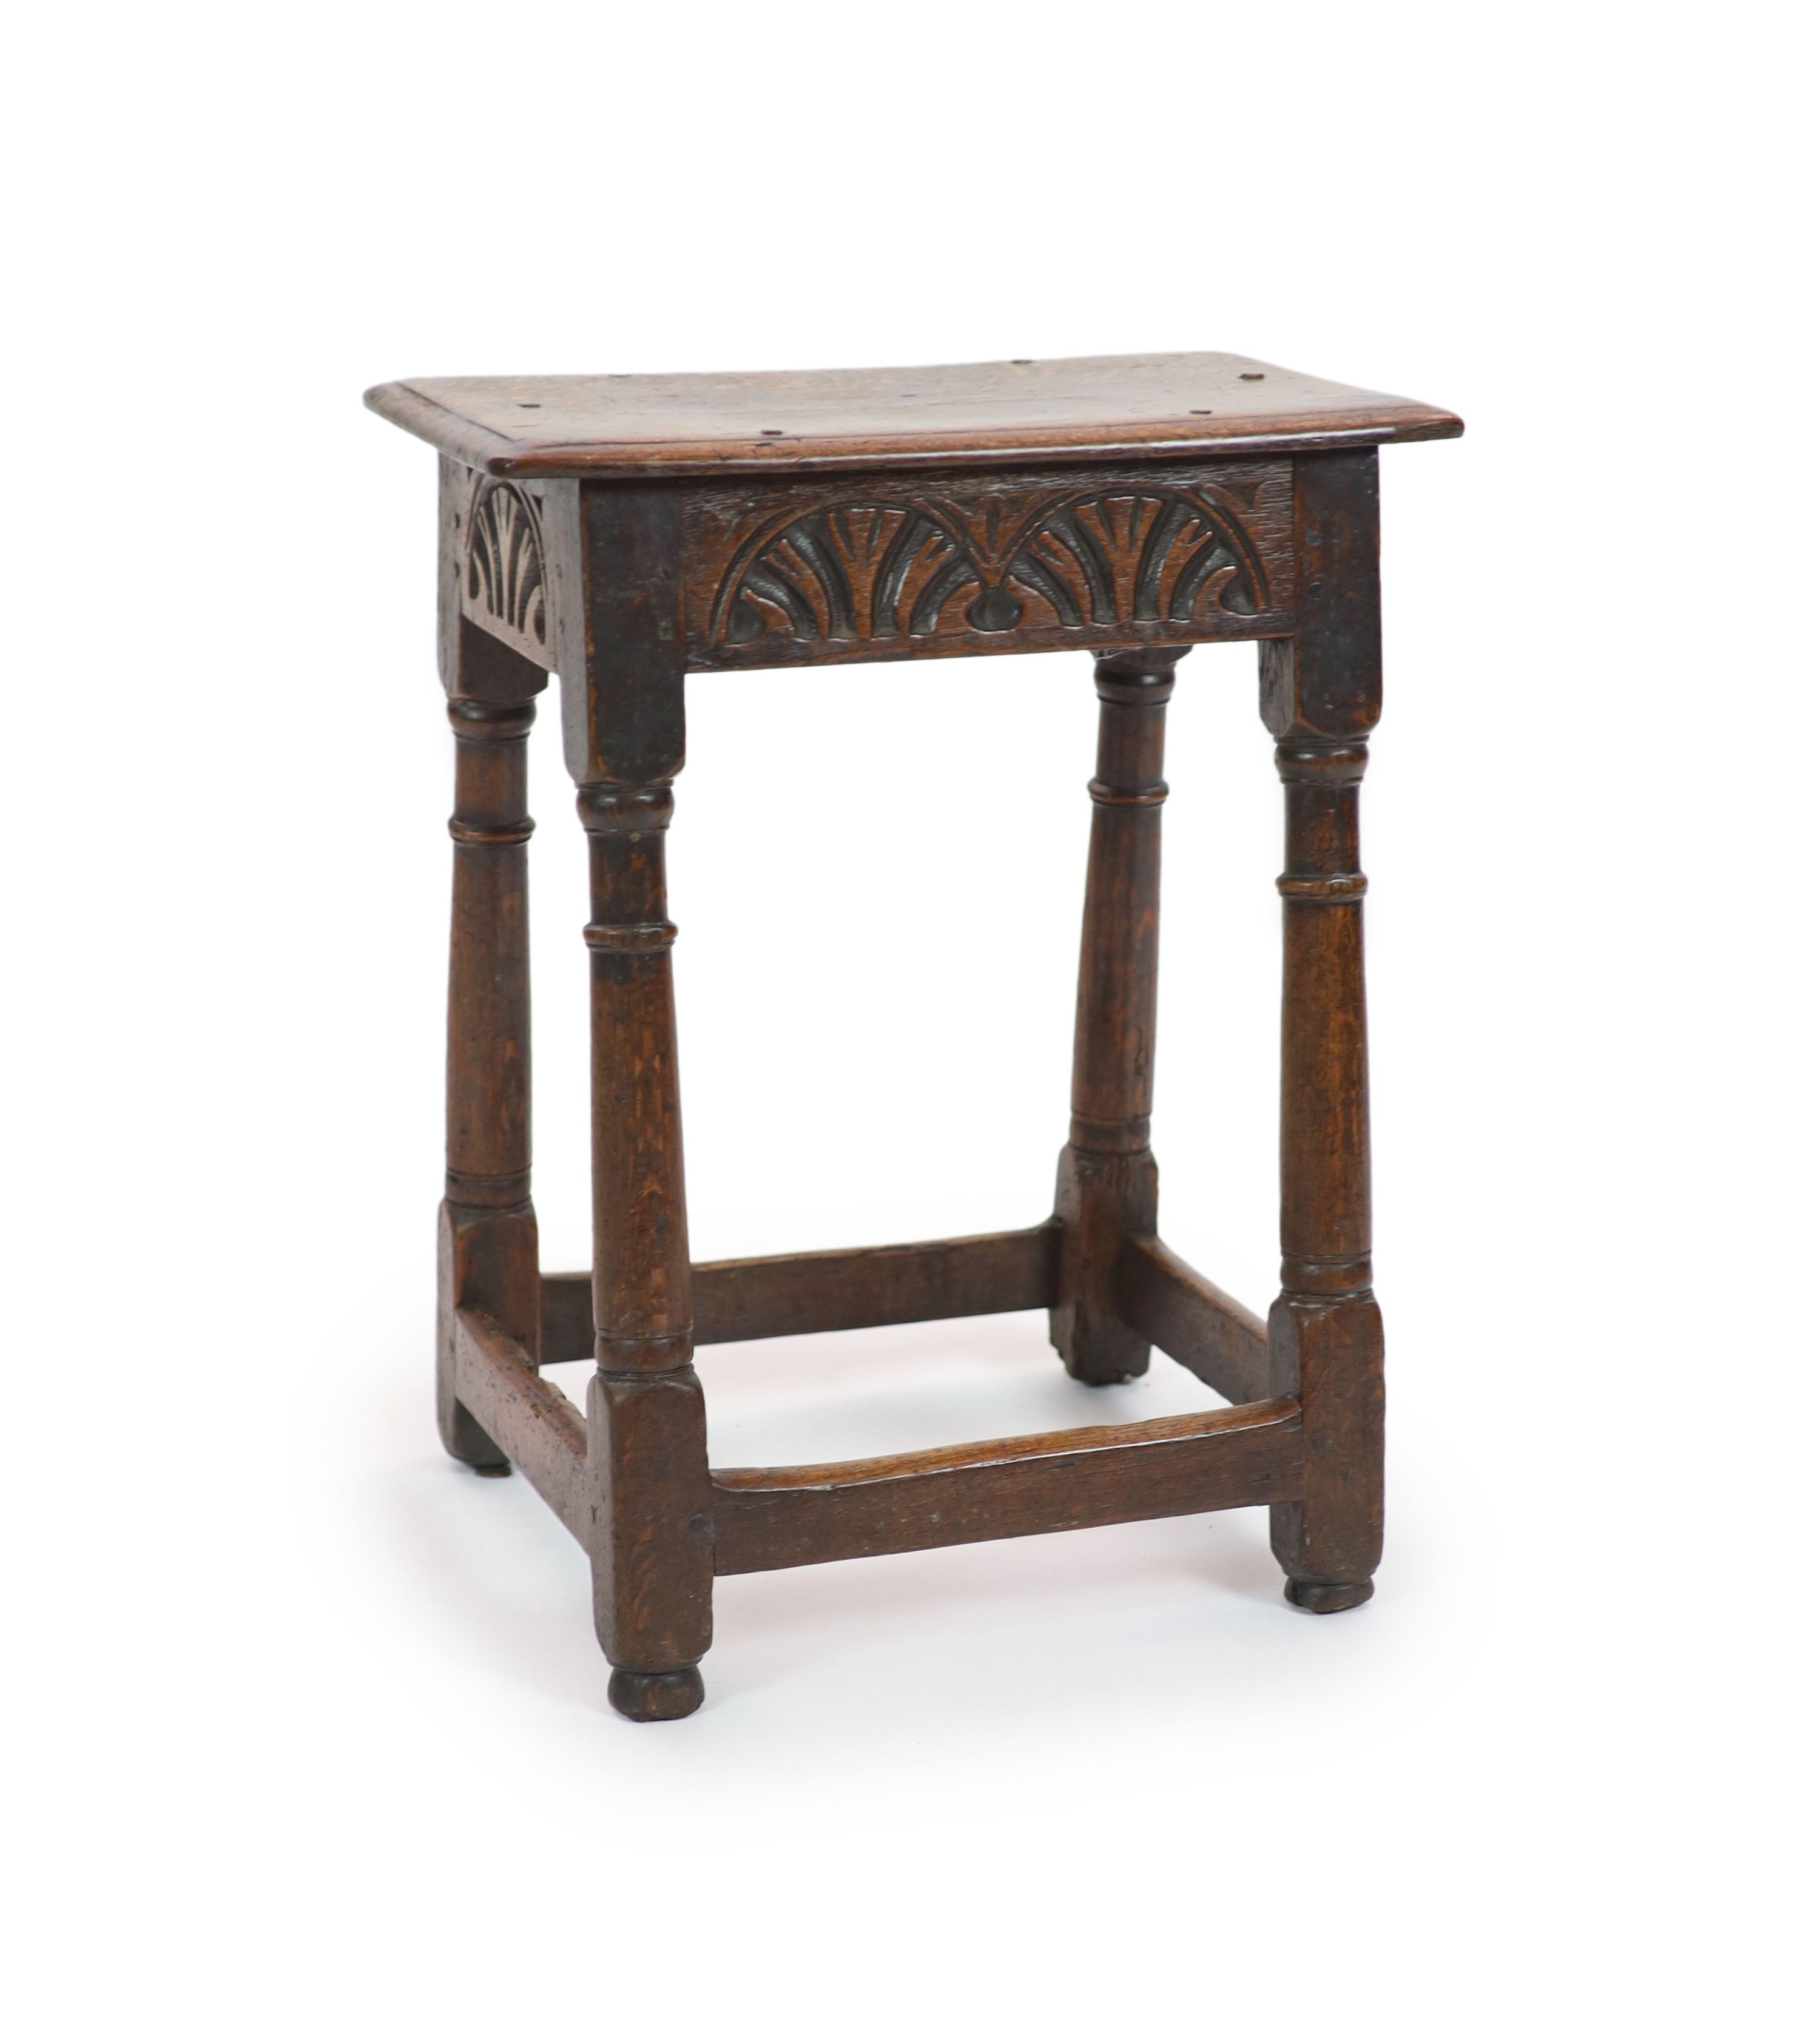 A Charles II oak joint stool, H 57cm. W 46cm. D 34cm.